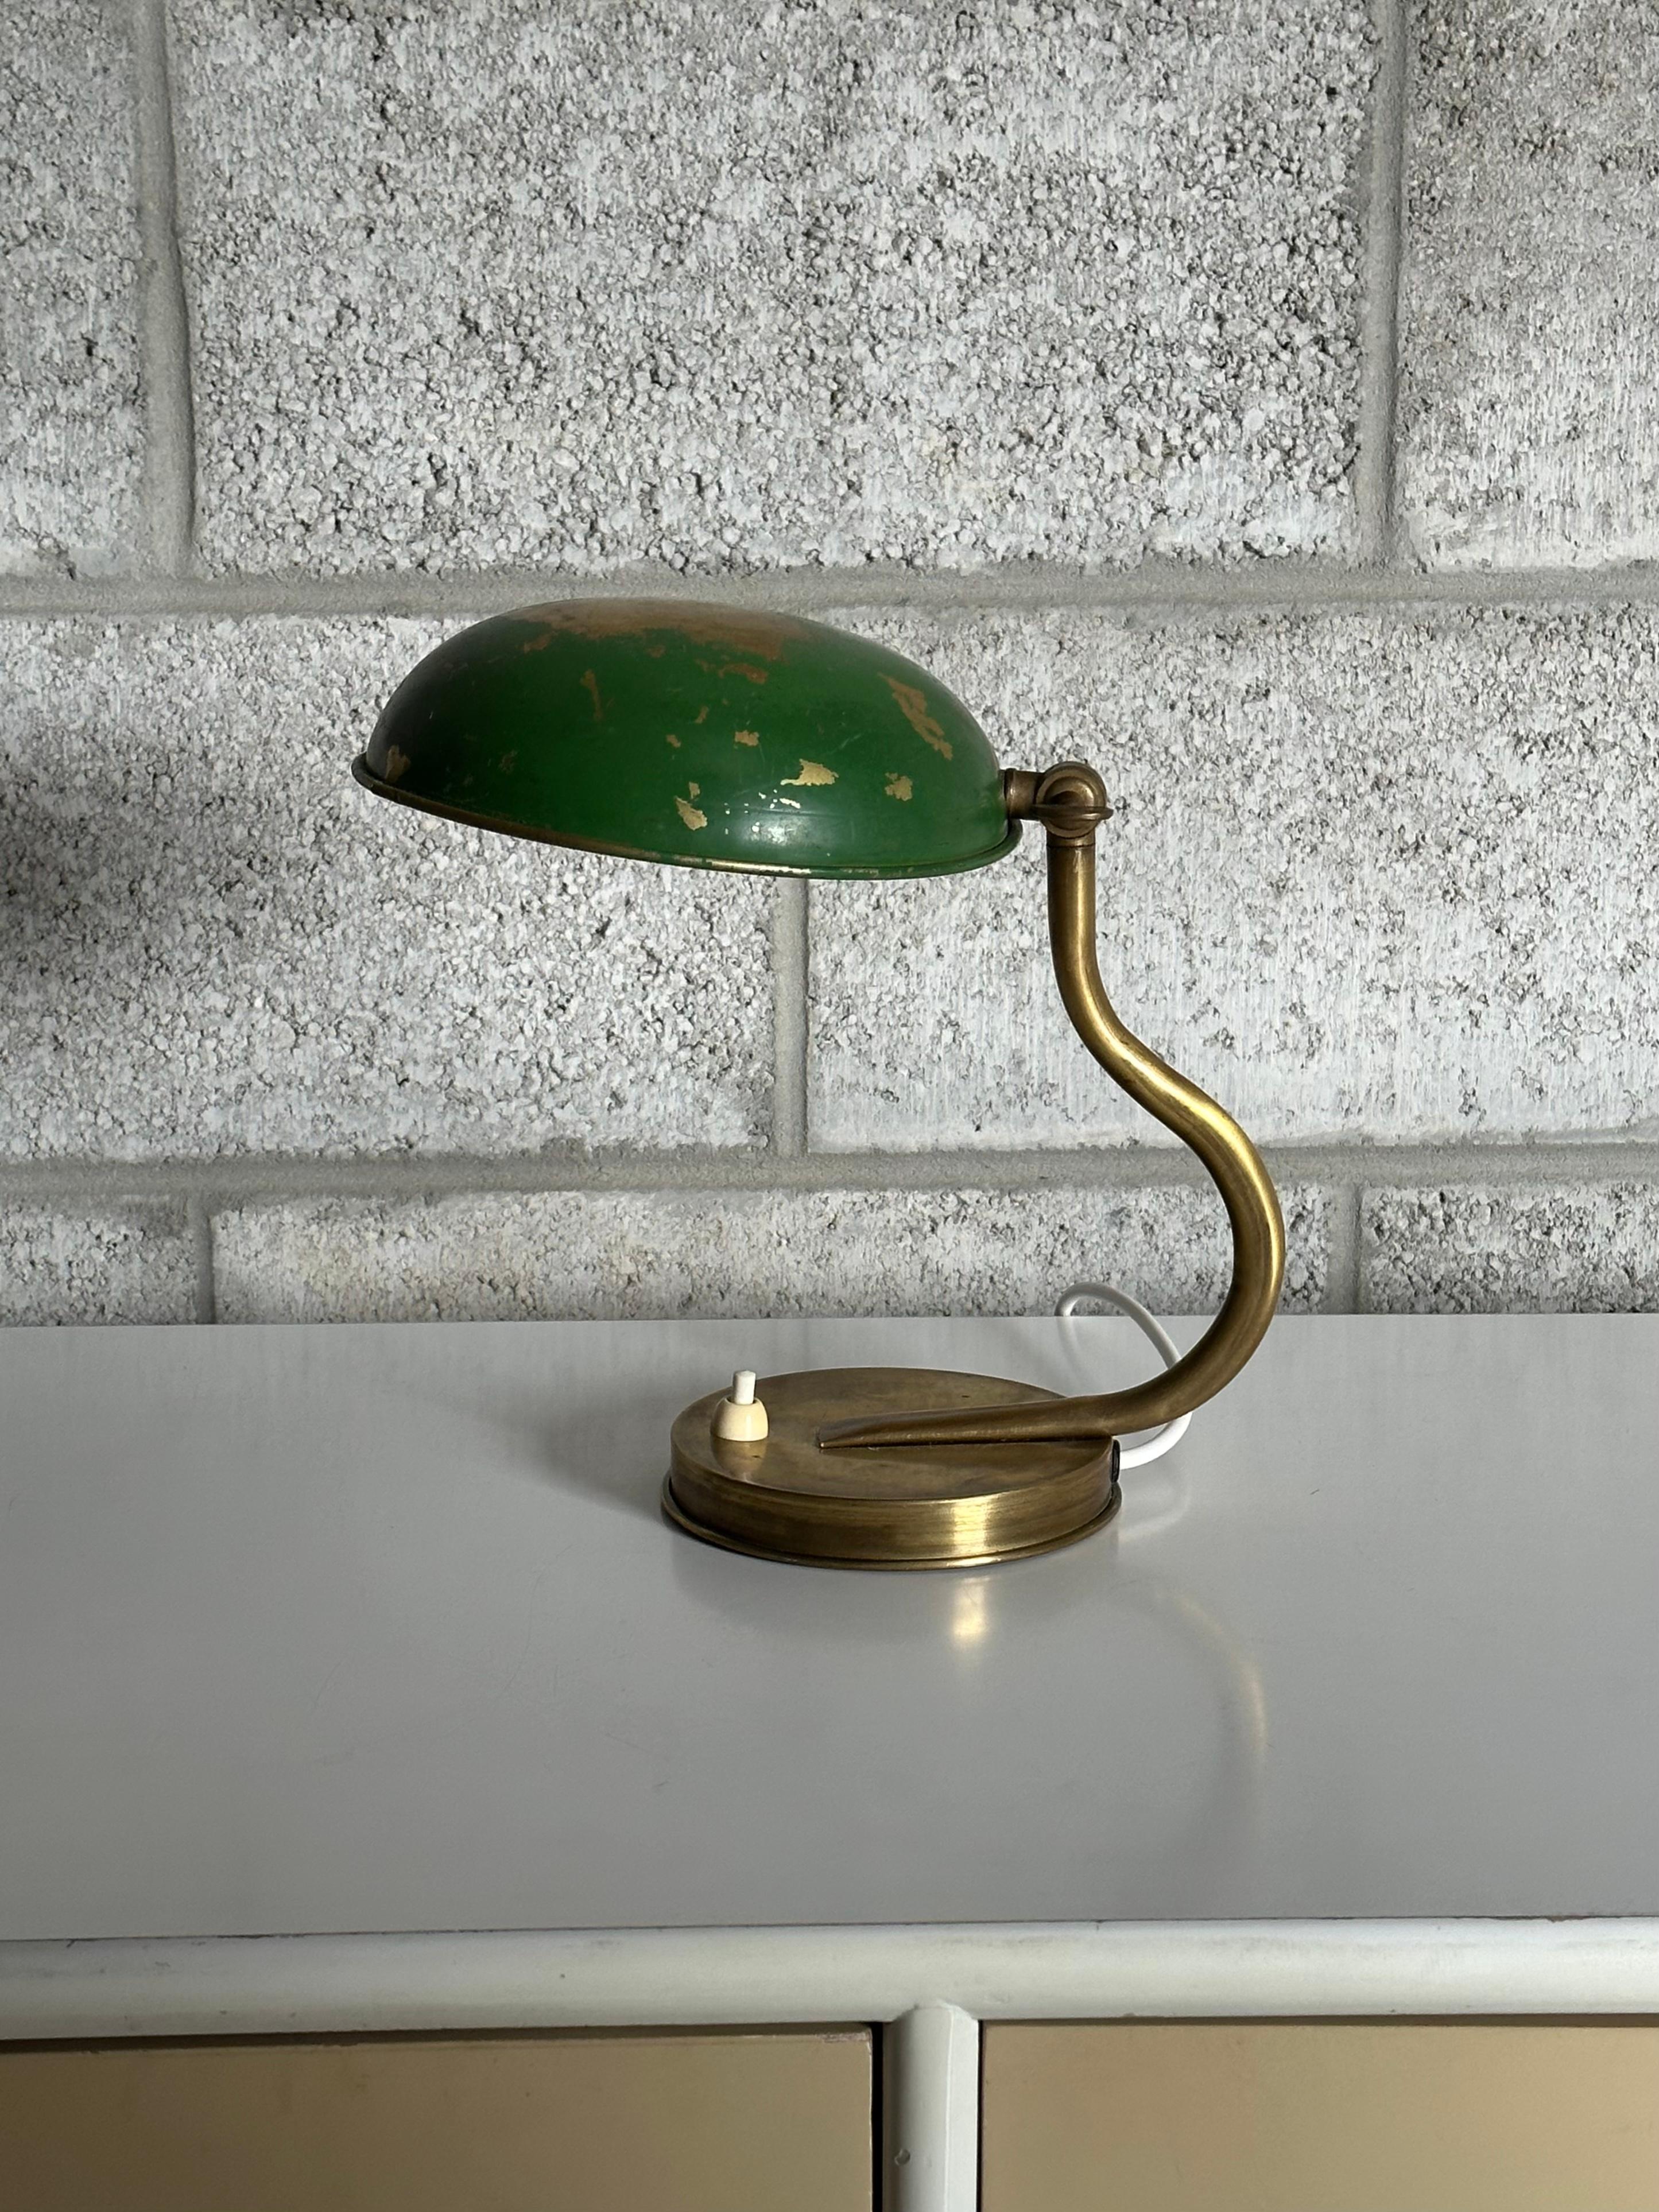 Eine einzigartige kleine Tisch- oder Wandleuchte von ASEA, die Hans Bergström zugeschrieben wird. Diese Lampe verfügt über einen Boden mit einer Aussparung in der Bodenplatte, die es ermöglicht, sie mit einem Nagel oder einer Schraube an der Wand